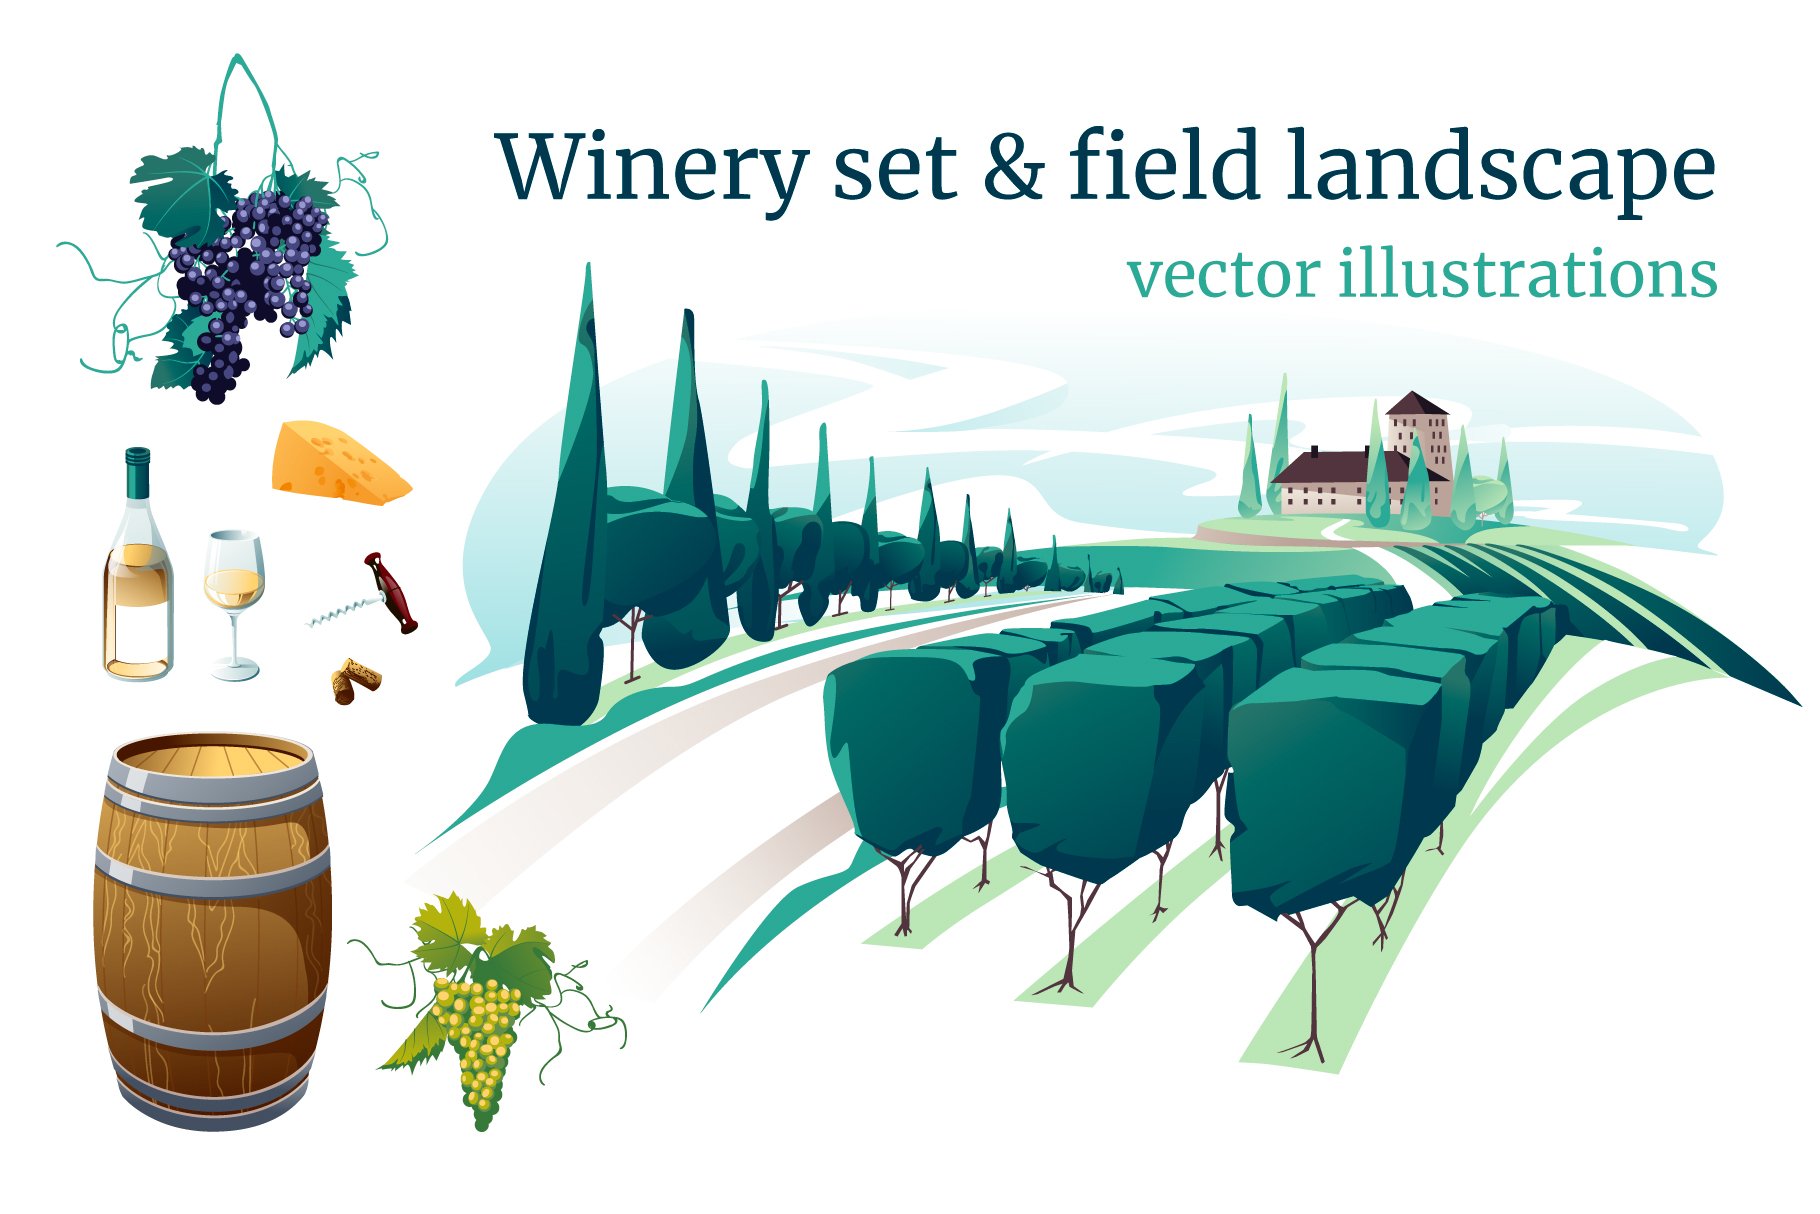 Vineyard landscape & wine set cover image.